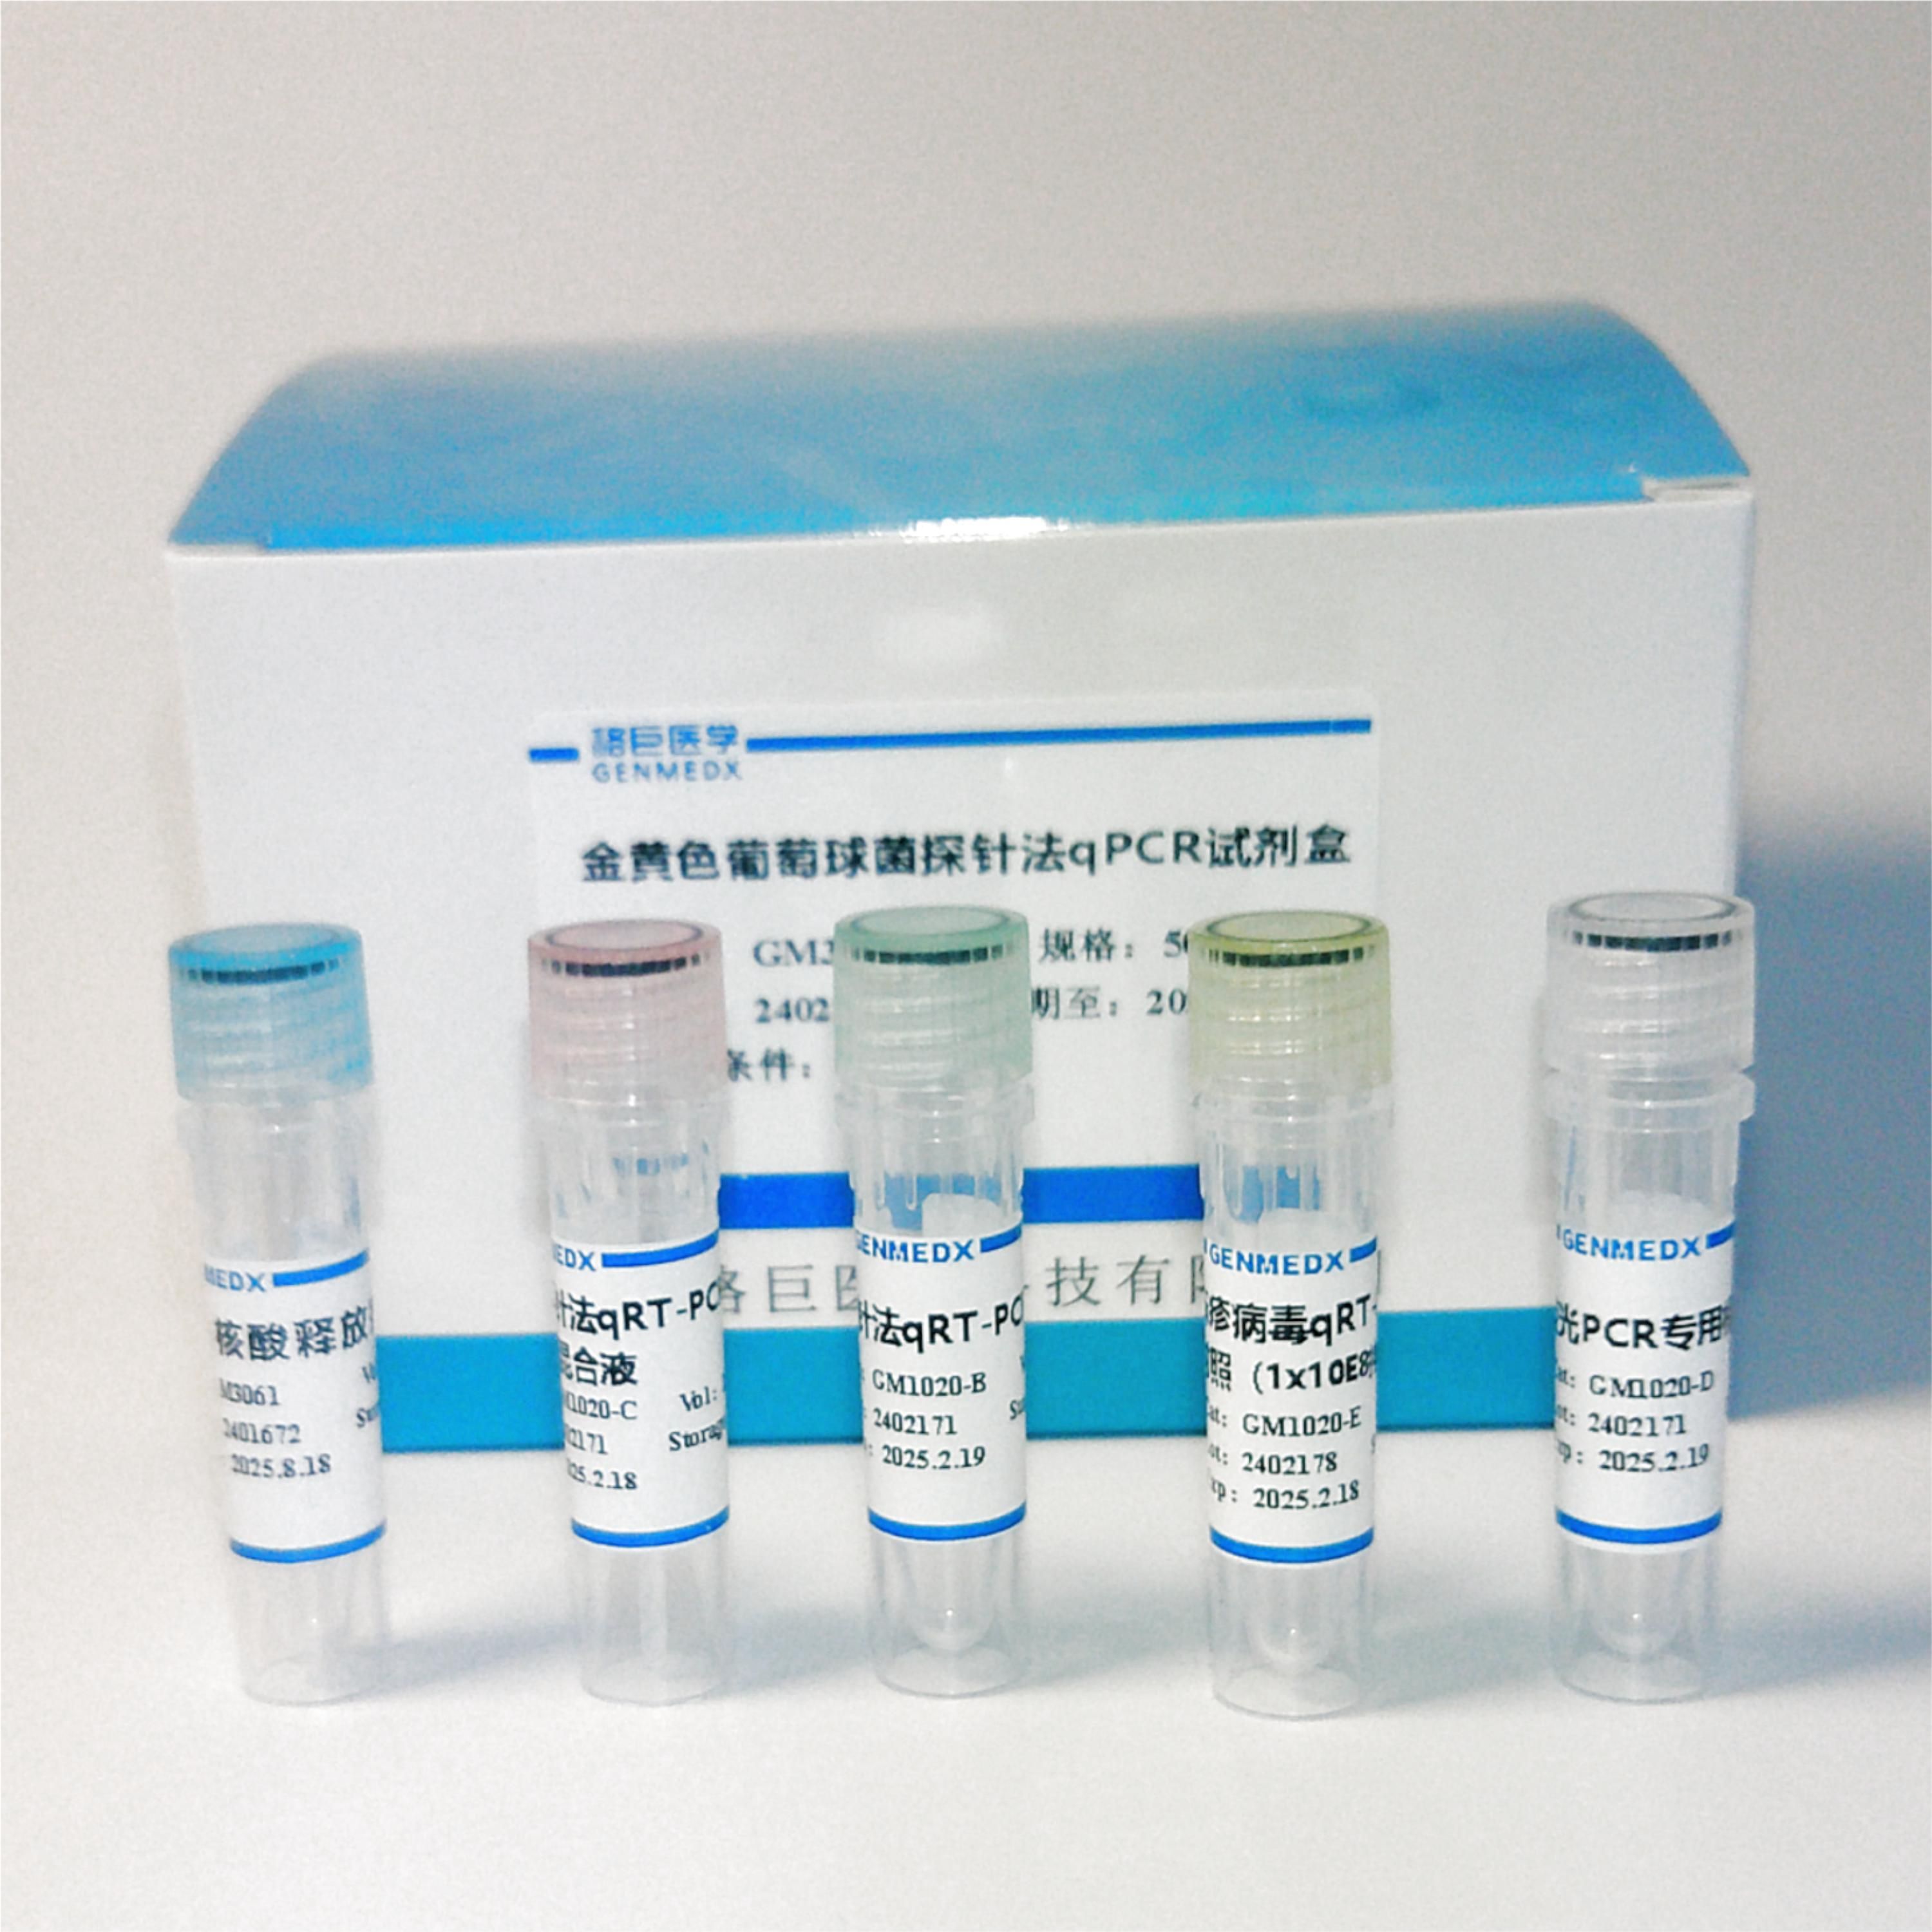 肠产毒性大肠杆菌(ETEC)探针法荧光定量PCR试剂盒